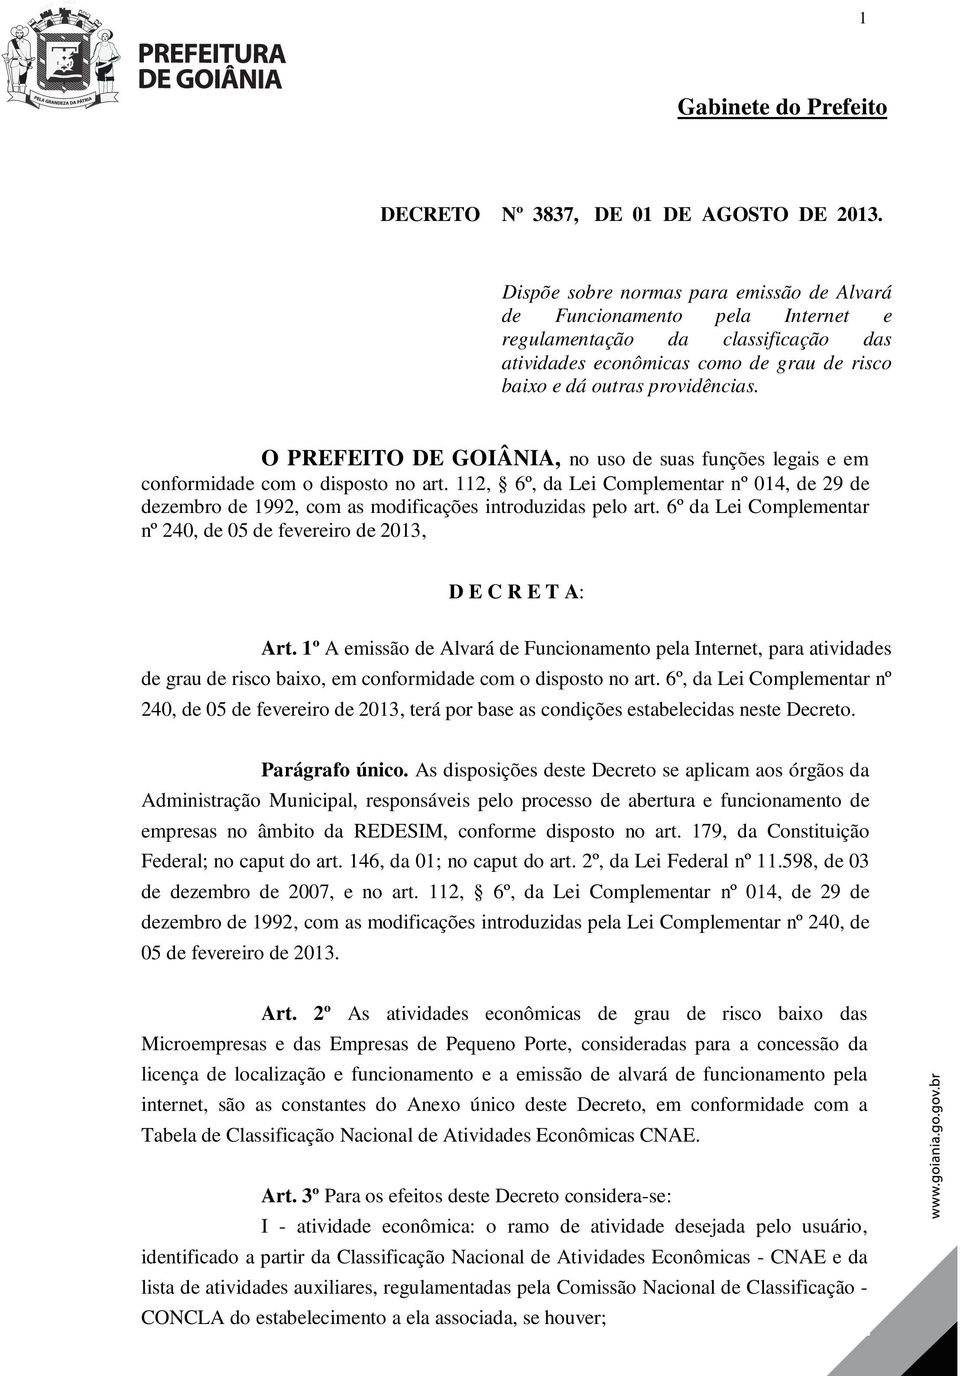 O PREFEITO DE GOIÂNIA, no uso de suas funções legais e em conformidade com o disposto no art. 112, 6º, da Lei Complementar nº 014, de 29 de dezembro de 1992, com as modificações introduzidas pelo art.